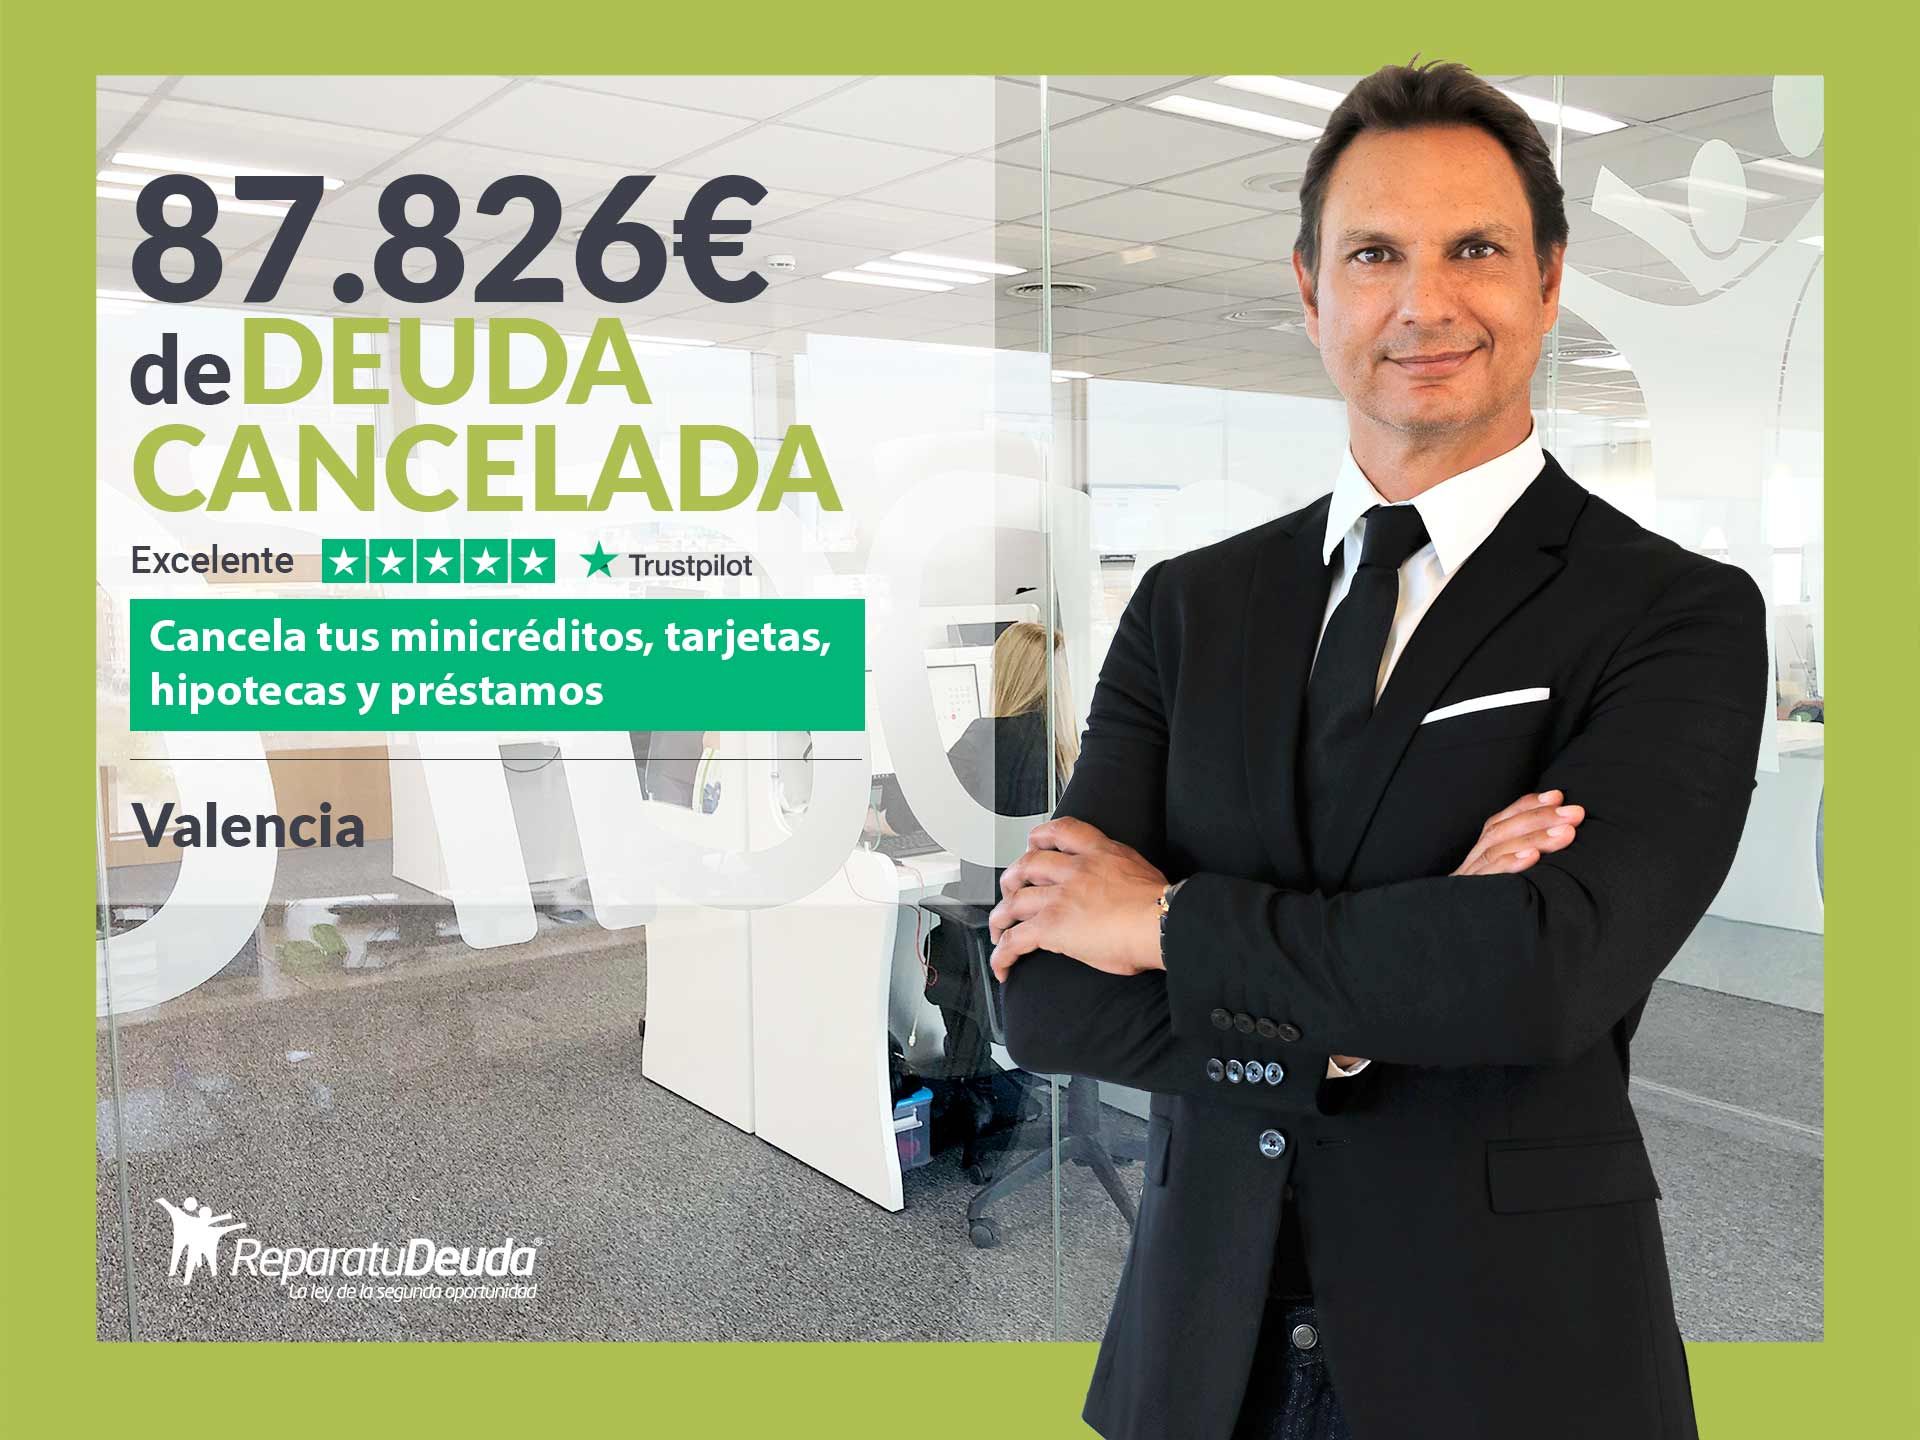 Repara tu Deuda Abogados cancela 87.826? en Valencia con la Ley de Segunda Oportunidad